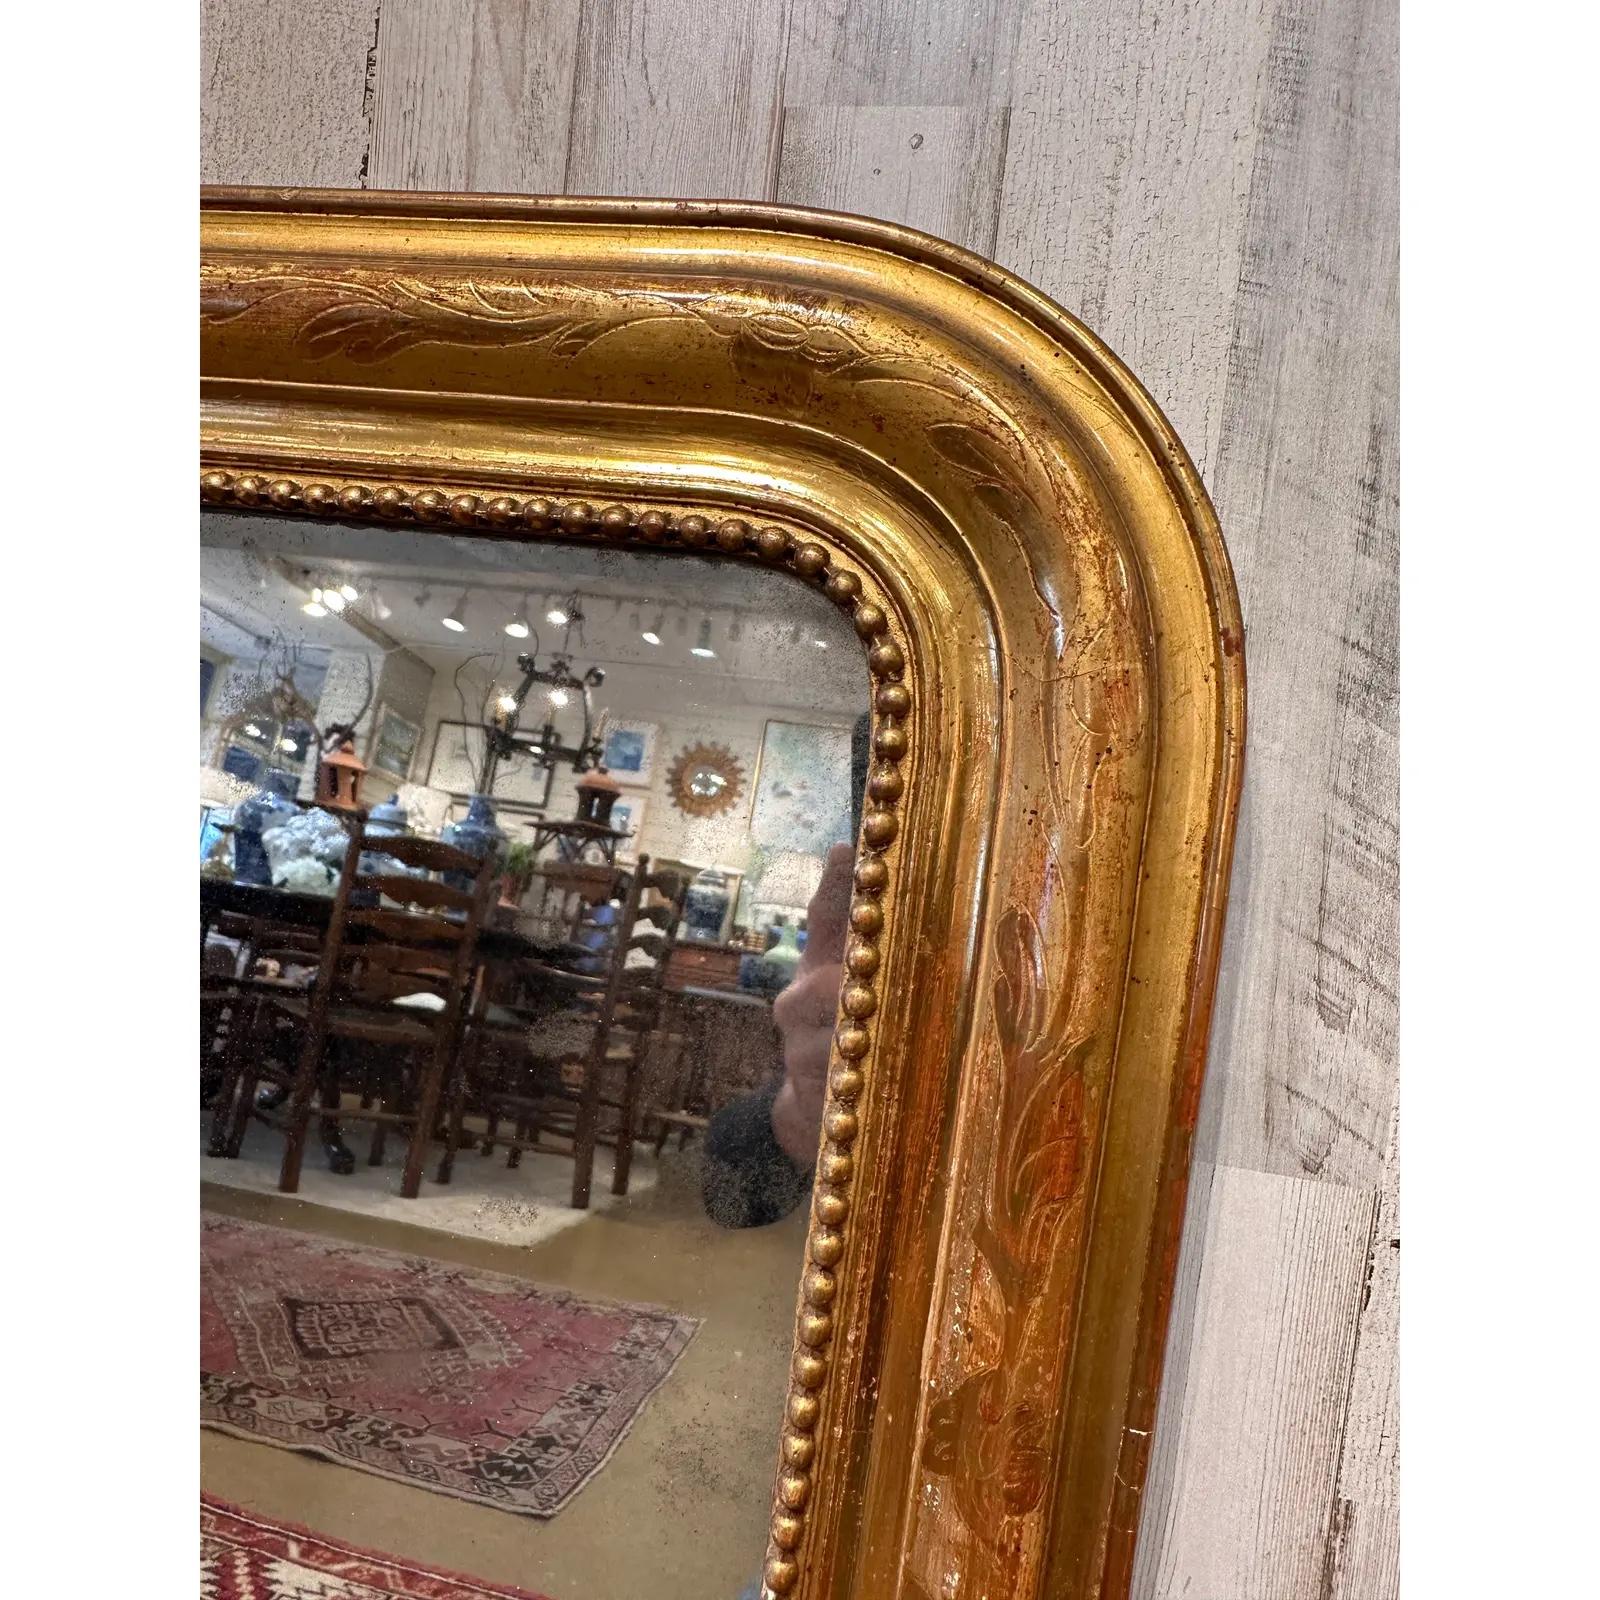 e miroir antique Louis Philippe, orné d'une finition dorée, apporte un charme intemporel à tout espace. Ses détails ornés et son design classique en font une pièce maîtresse captivante, reflétant à la fois le style et l'histoire d'un seul coup